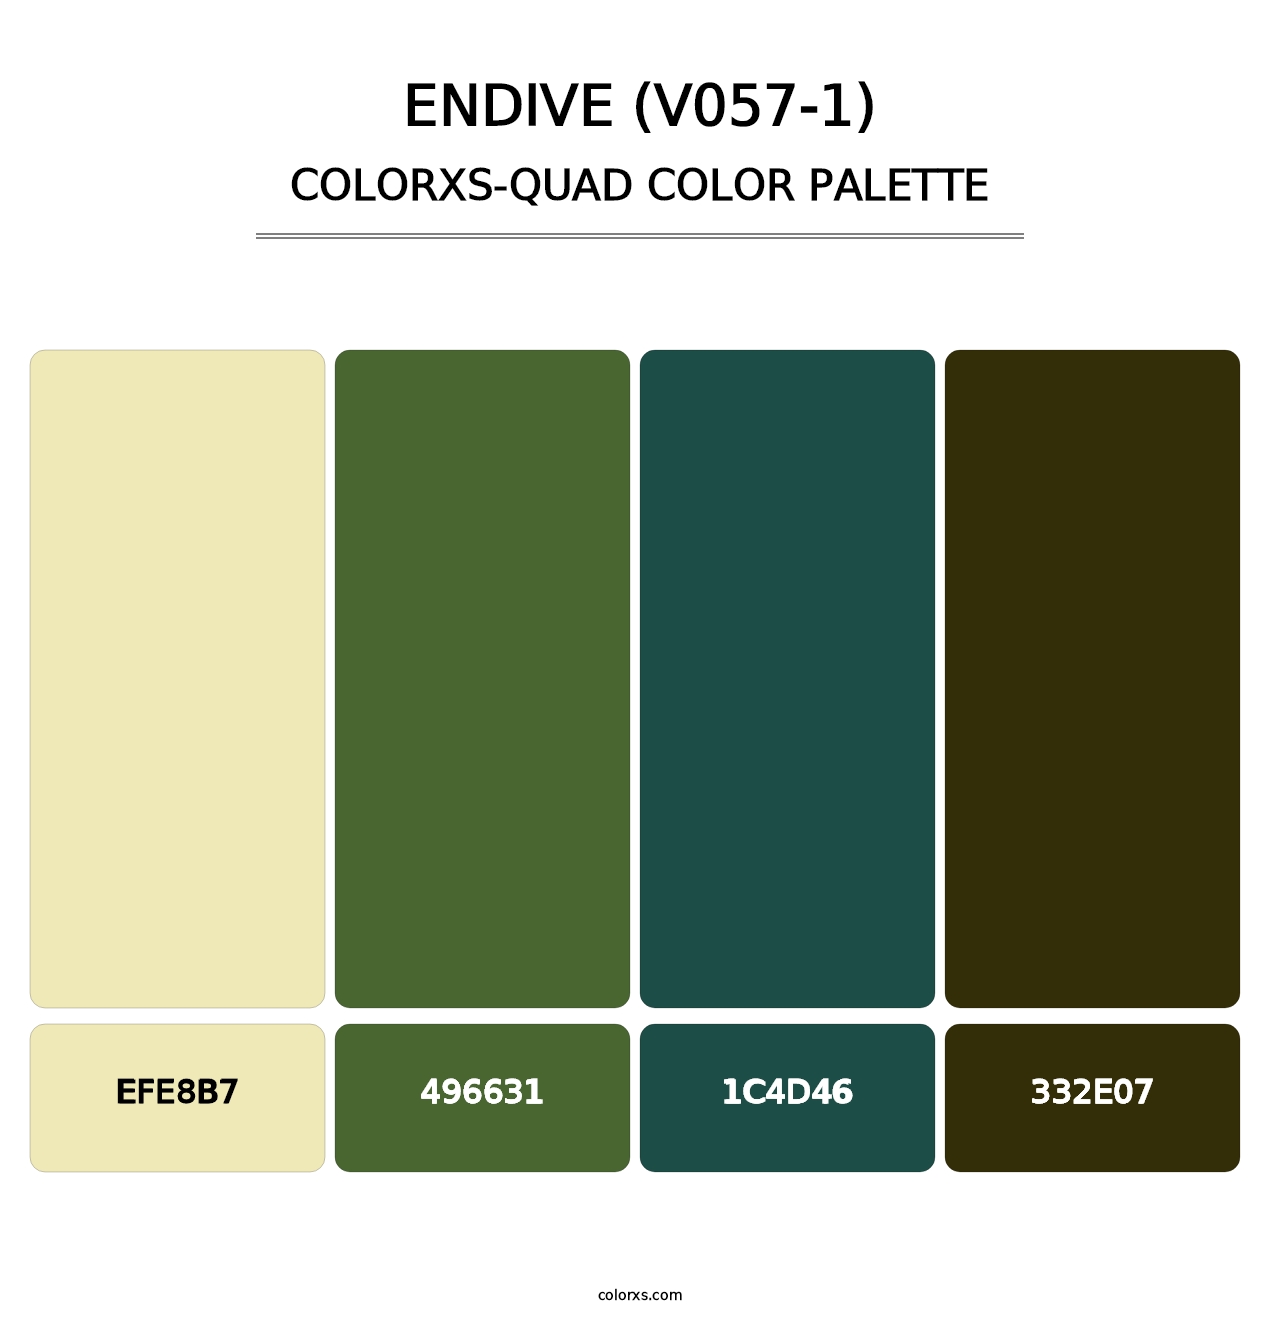 Endive (V057-1) - Colorxs Quad Palette